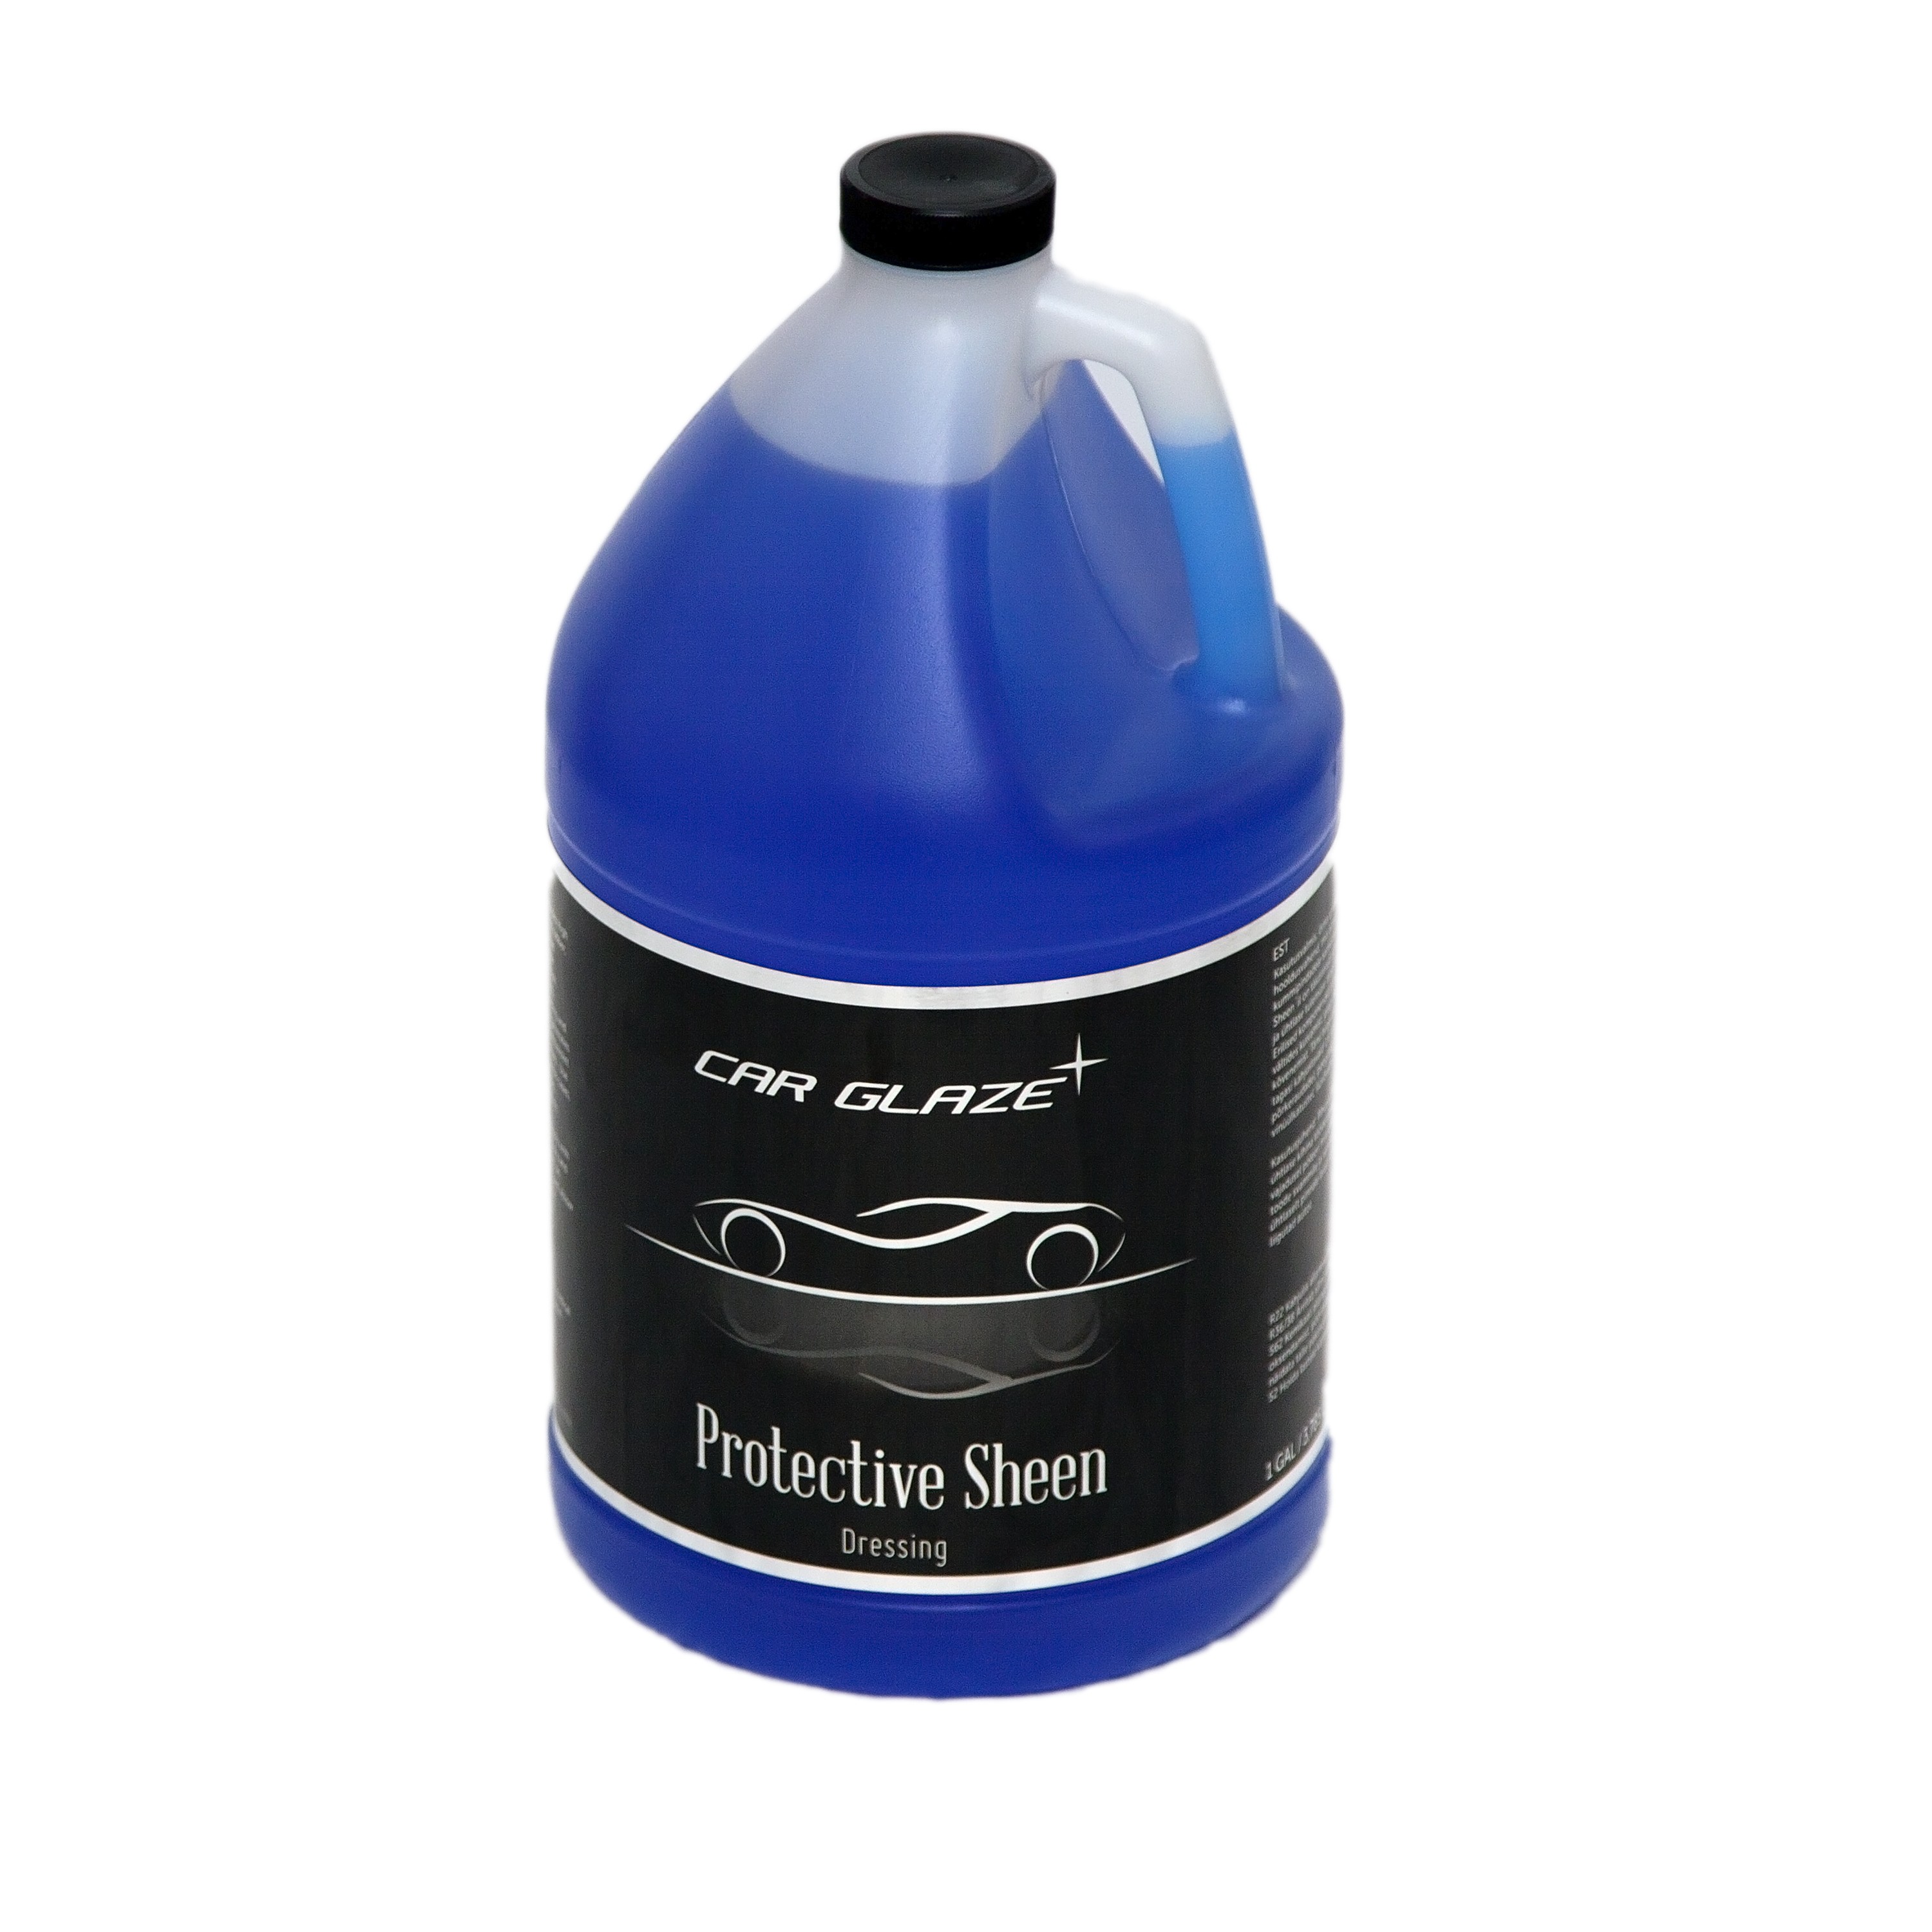 PROTECTIVE SHEEN  - Car Glaze - средство для блеска резины, пластика, шин - блеск для резины